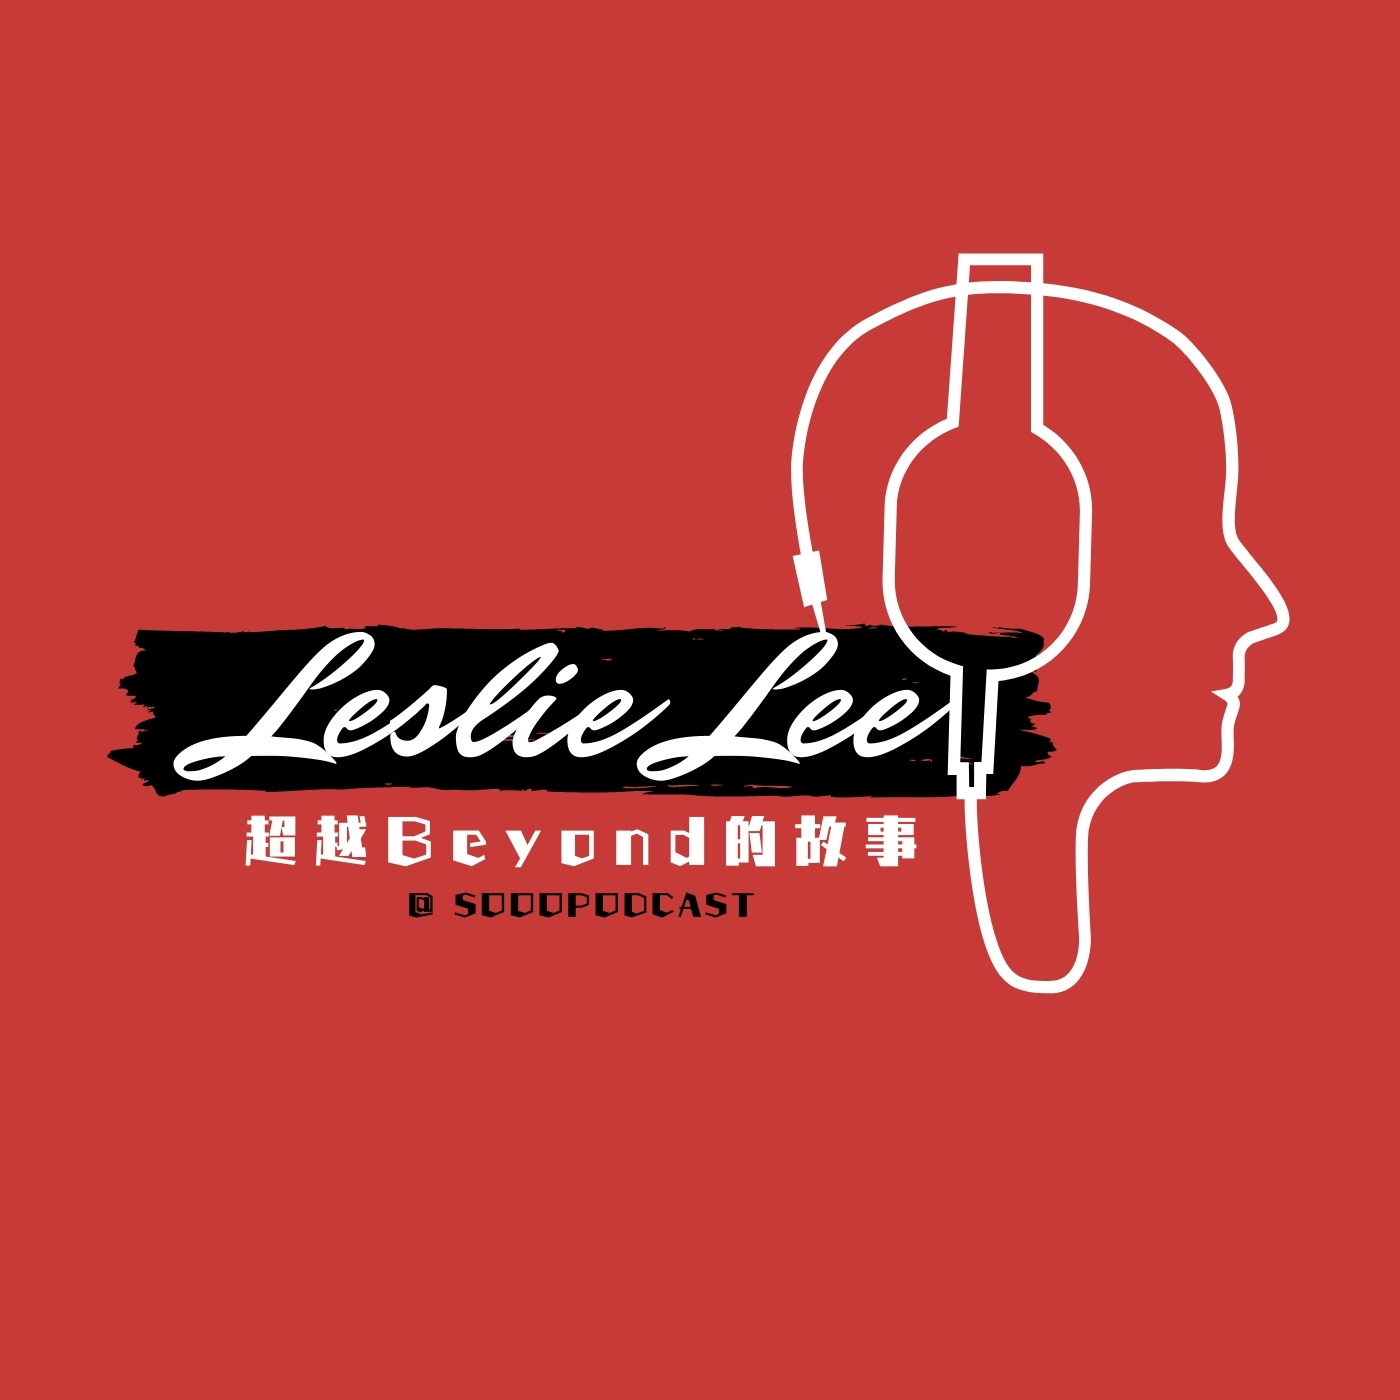 Artwork for podcast Sooo Leslie Lee 超越Beyond的故事